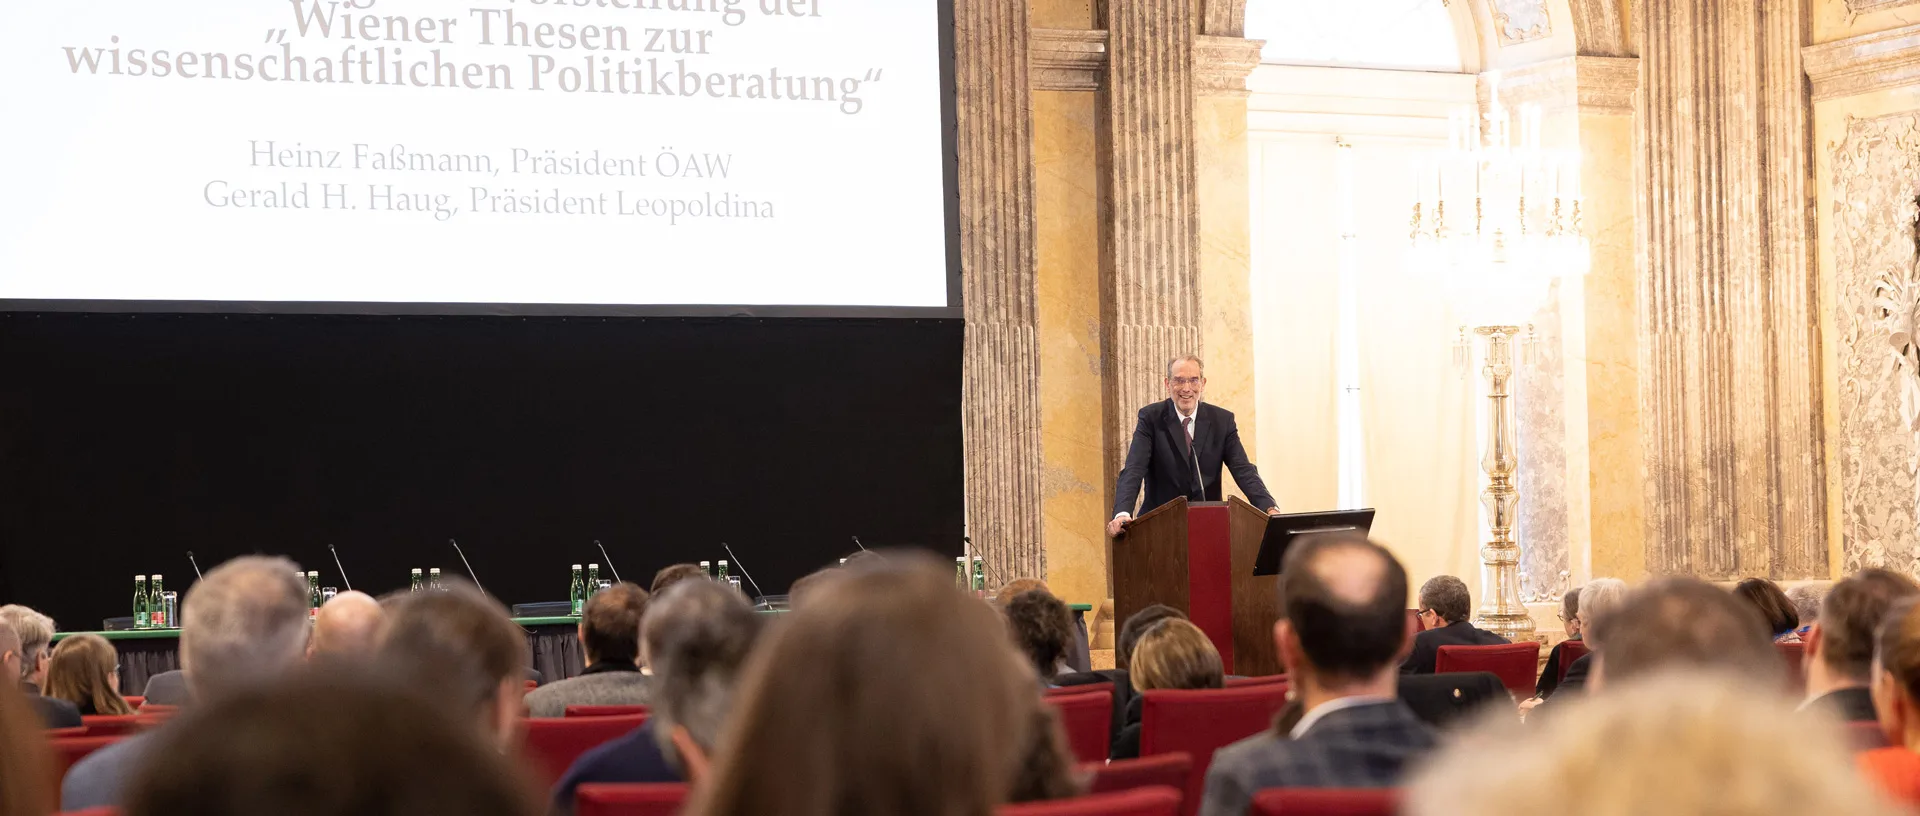 ÖAW-Präsident Heinz Faßmann am Podium vor seinem Publikum im Festsaal der ÖAW